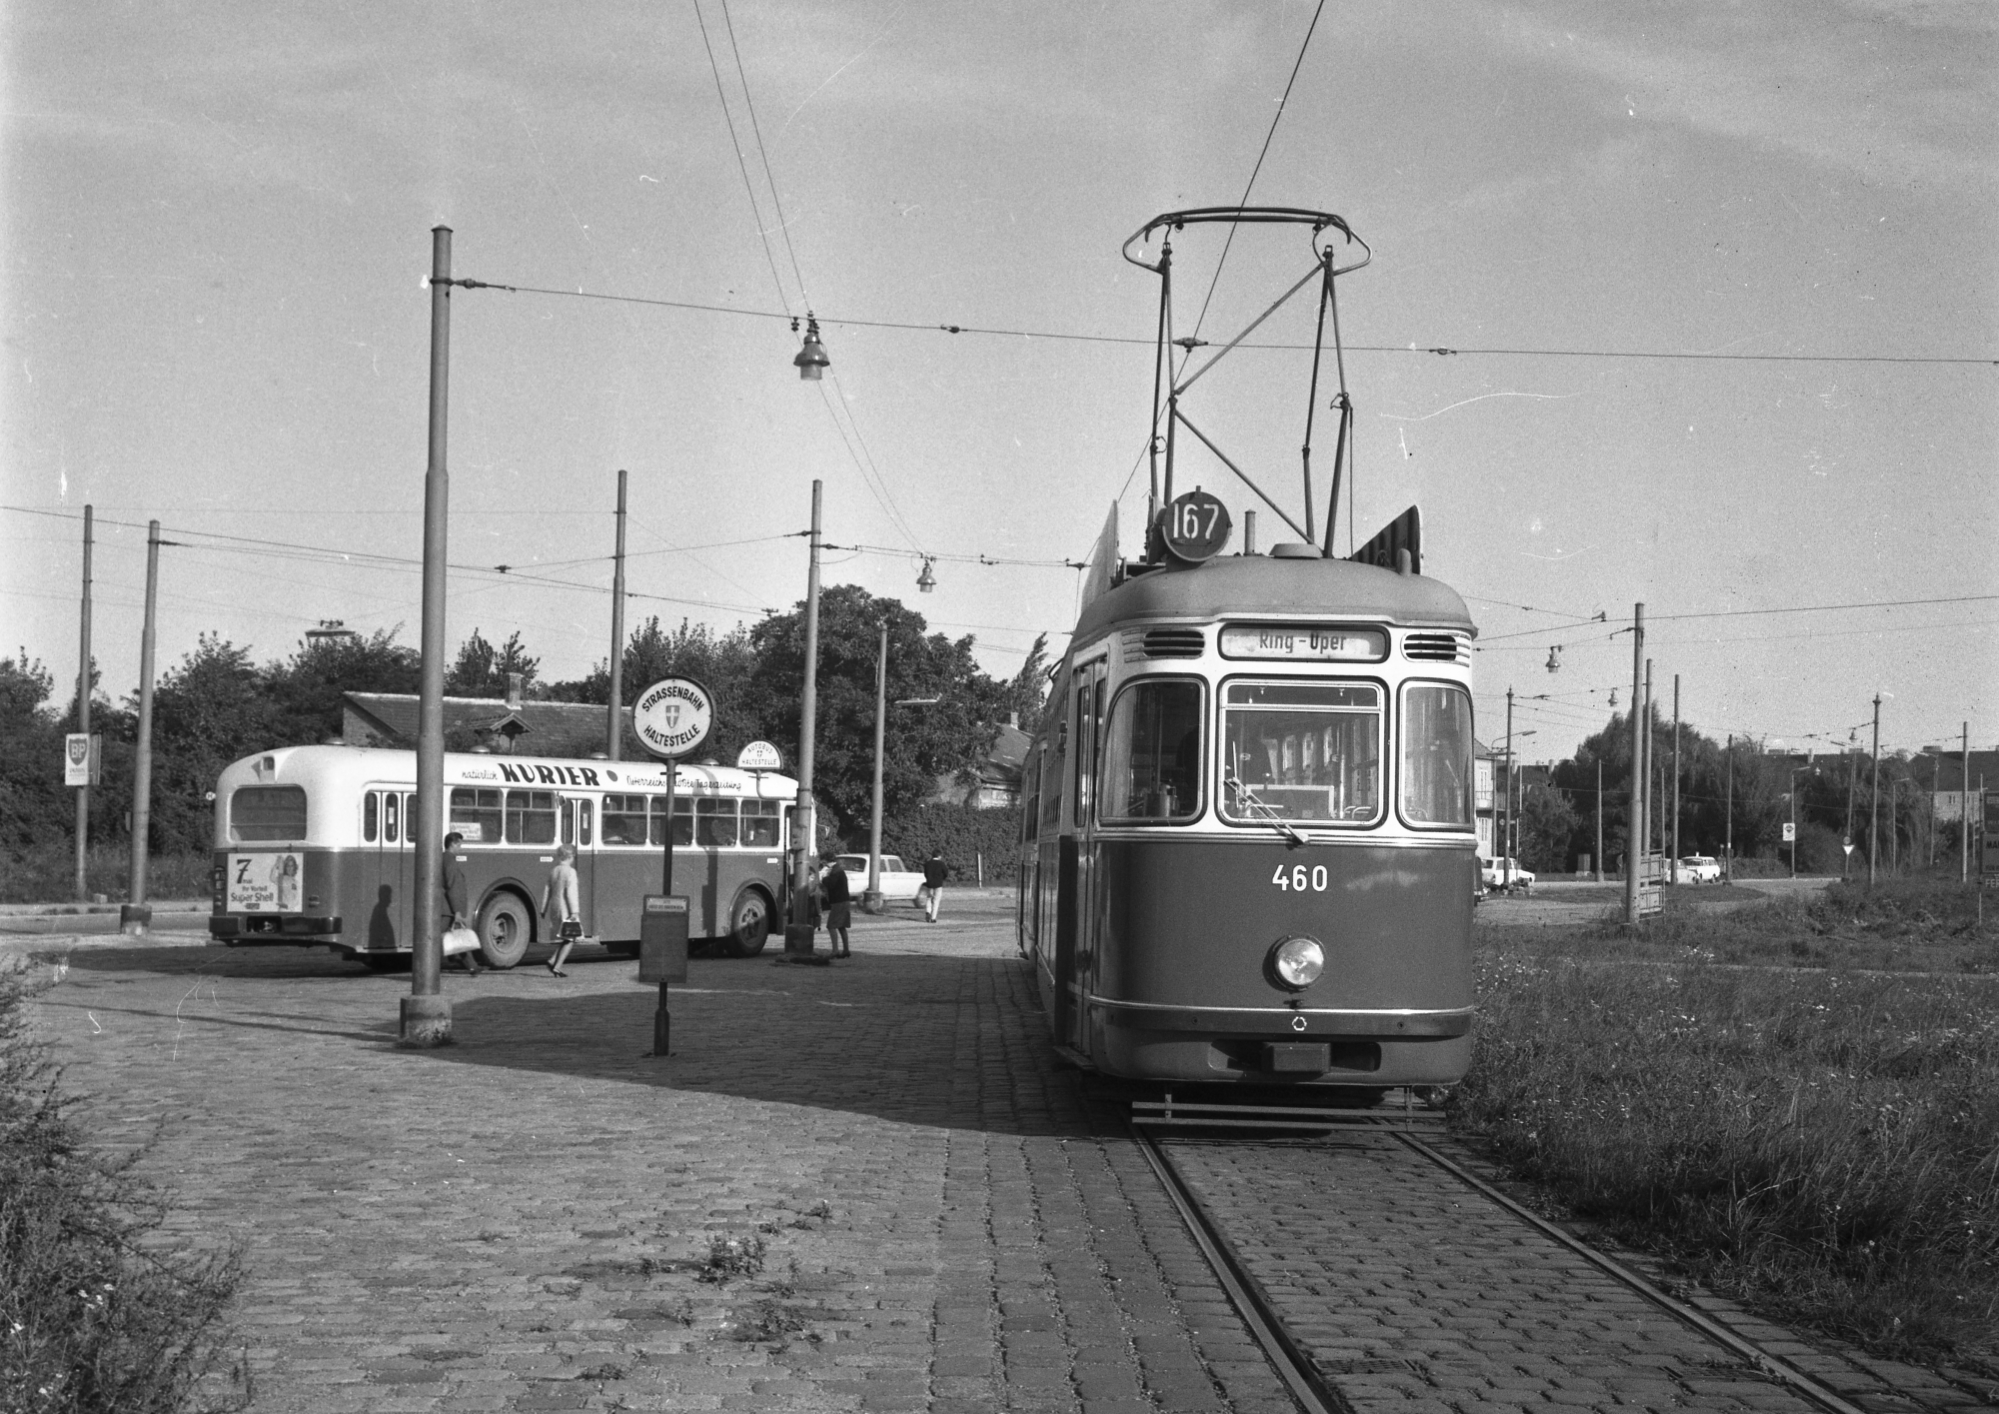 Triebwagen 460, der Type L, als Linie 167 und Bus als Linie 67 in Rothneusiedl unterwegs, 1966